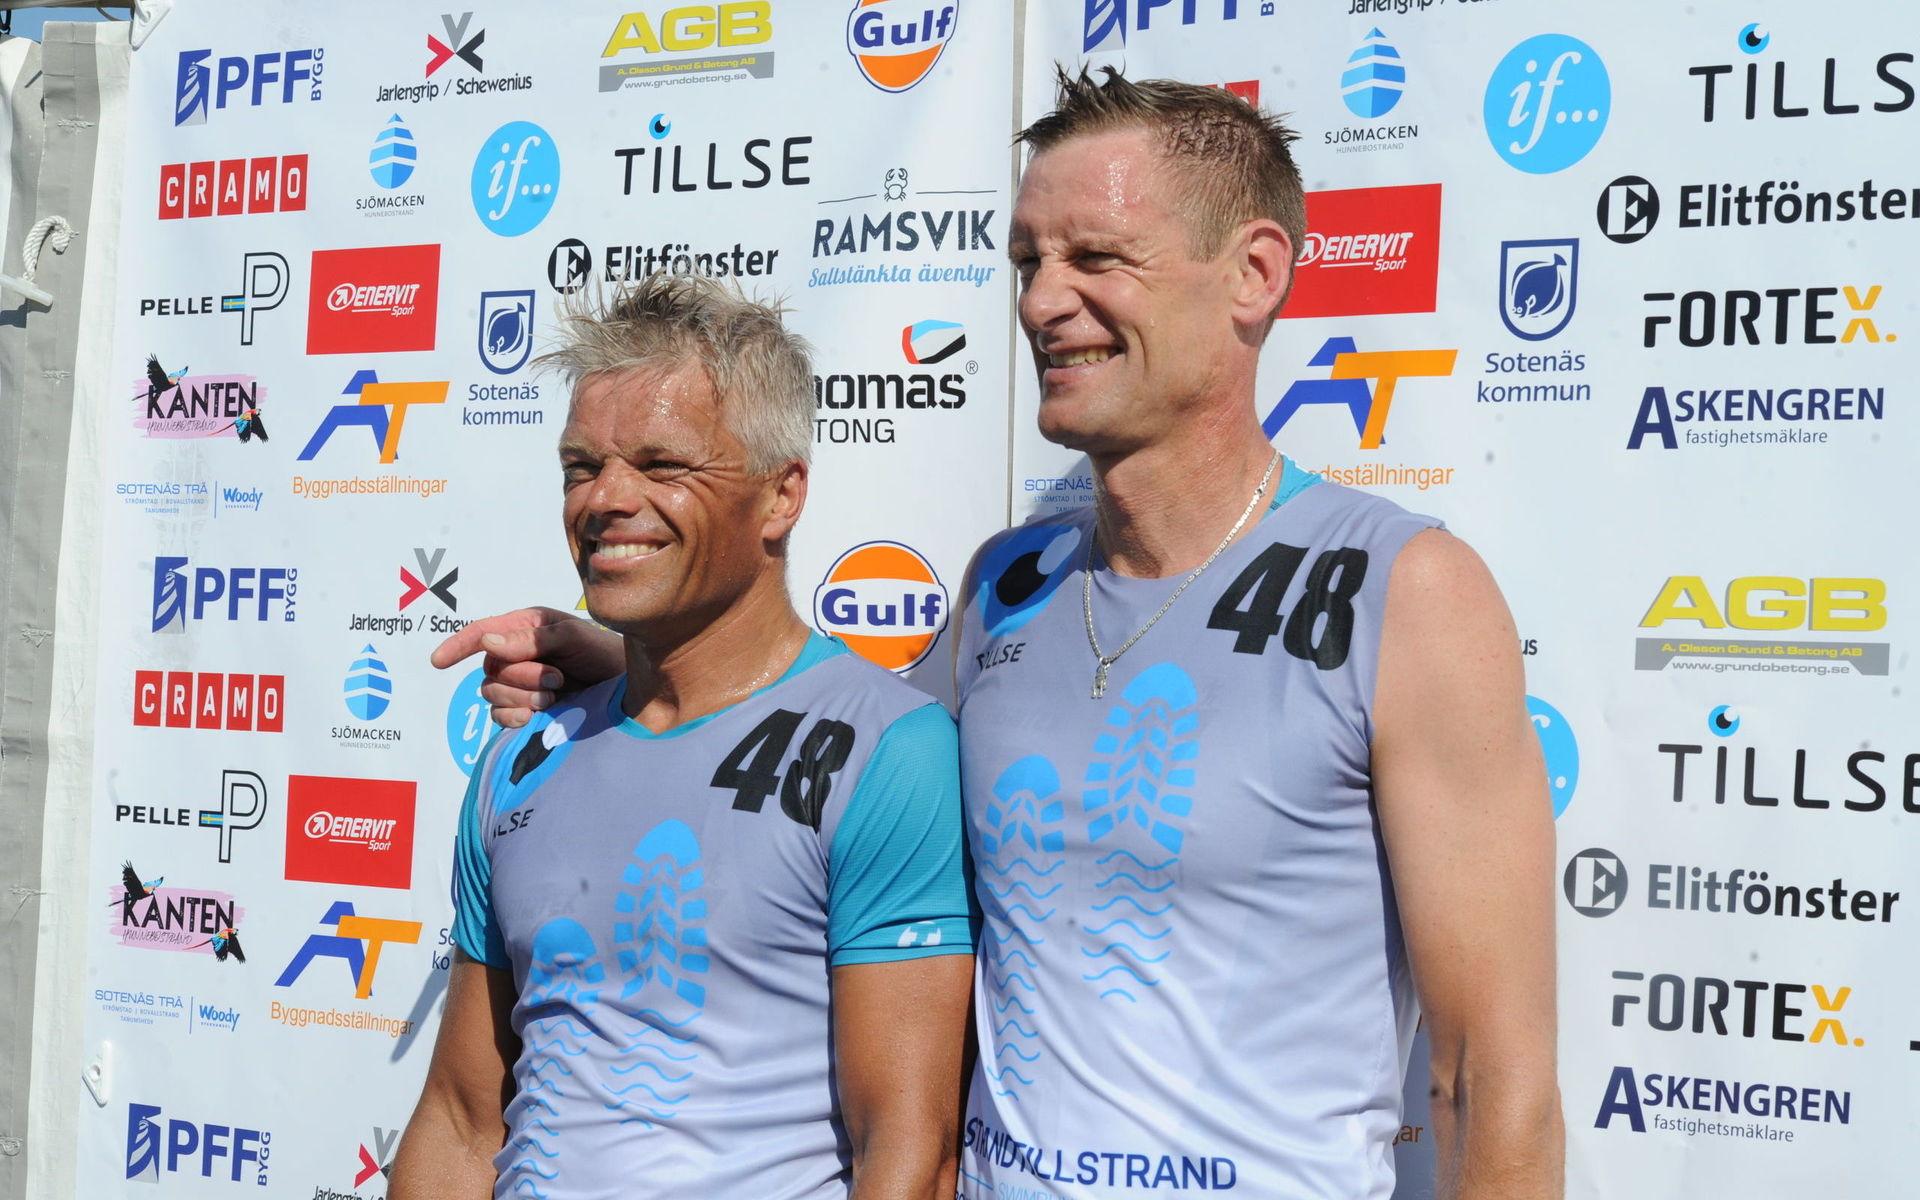 Team 3City triathlon med Torbjörn Claeson och Christian Bengtsson kom på andra plats i herrklassen.